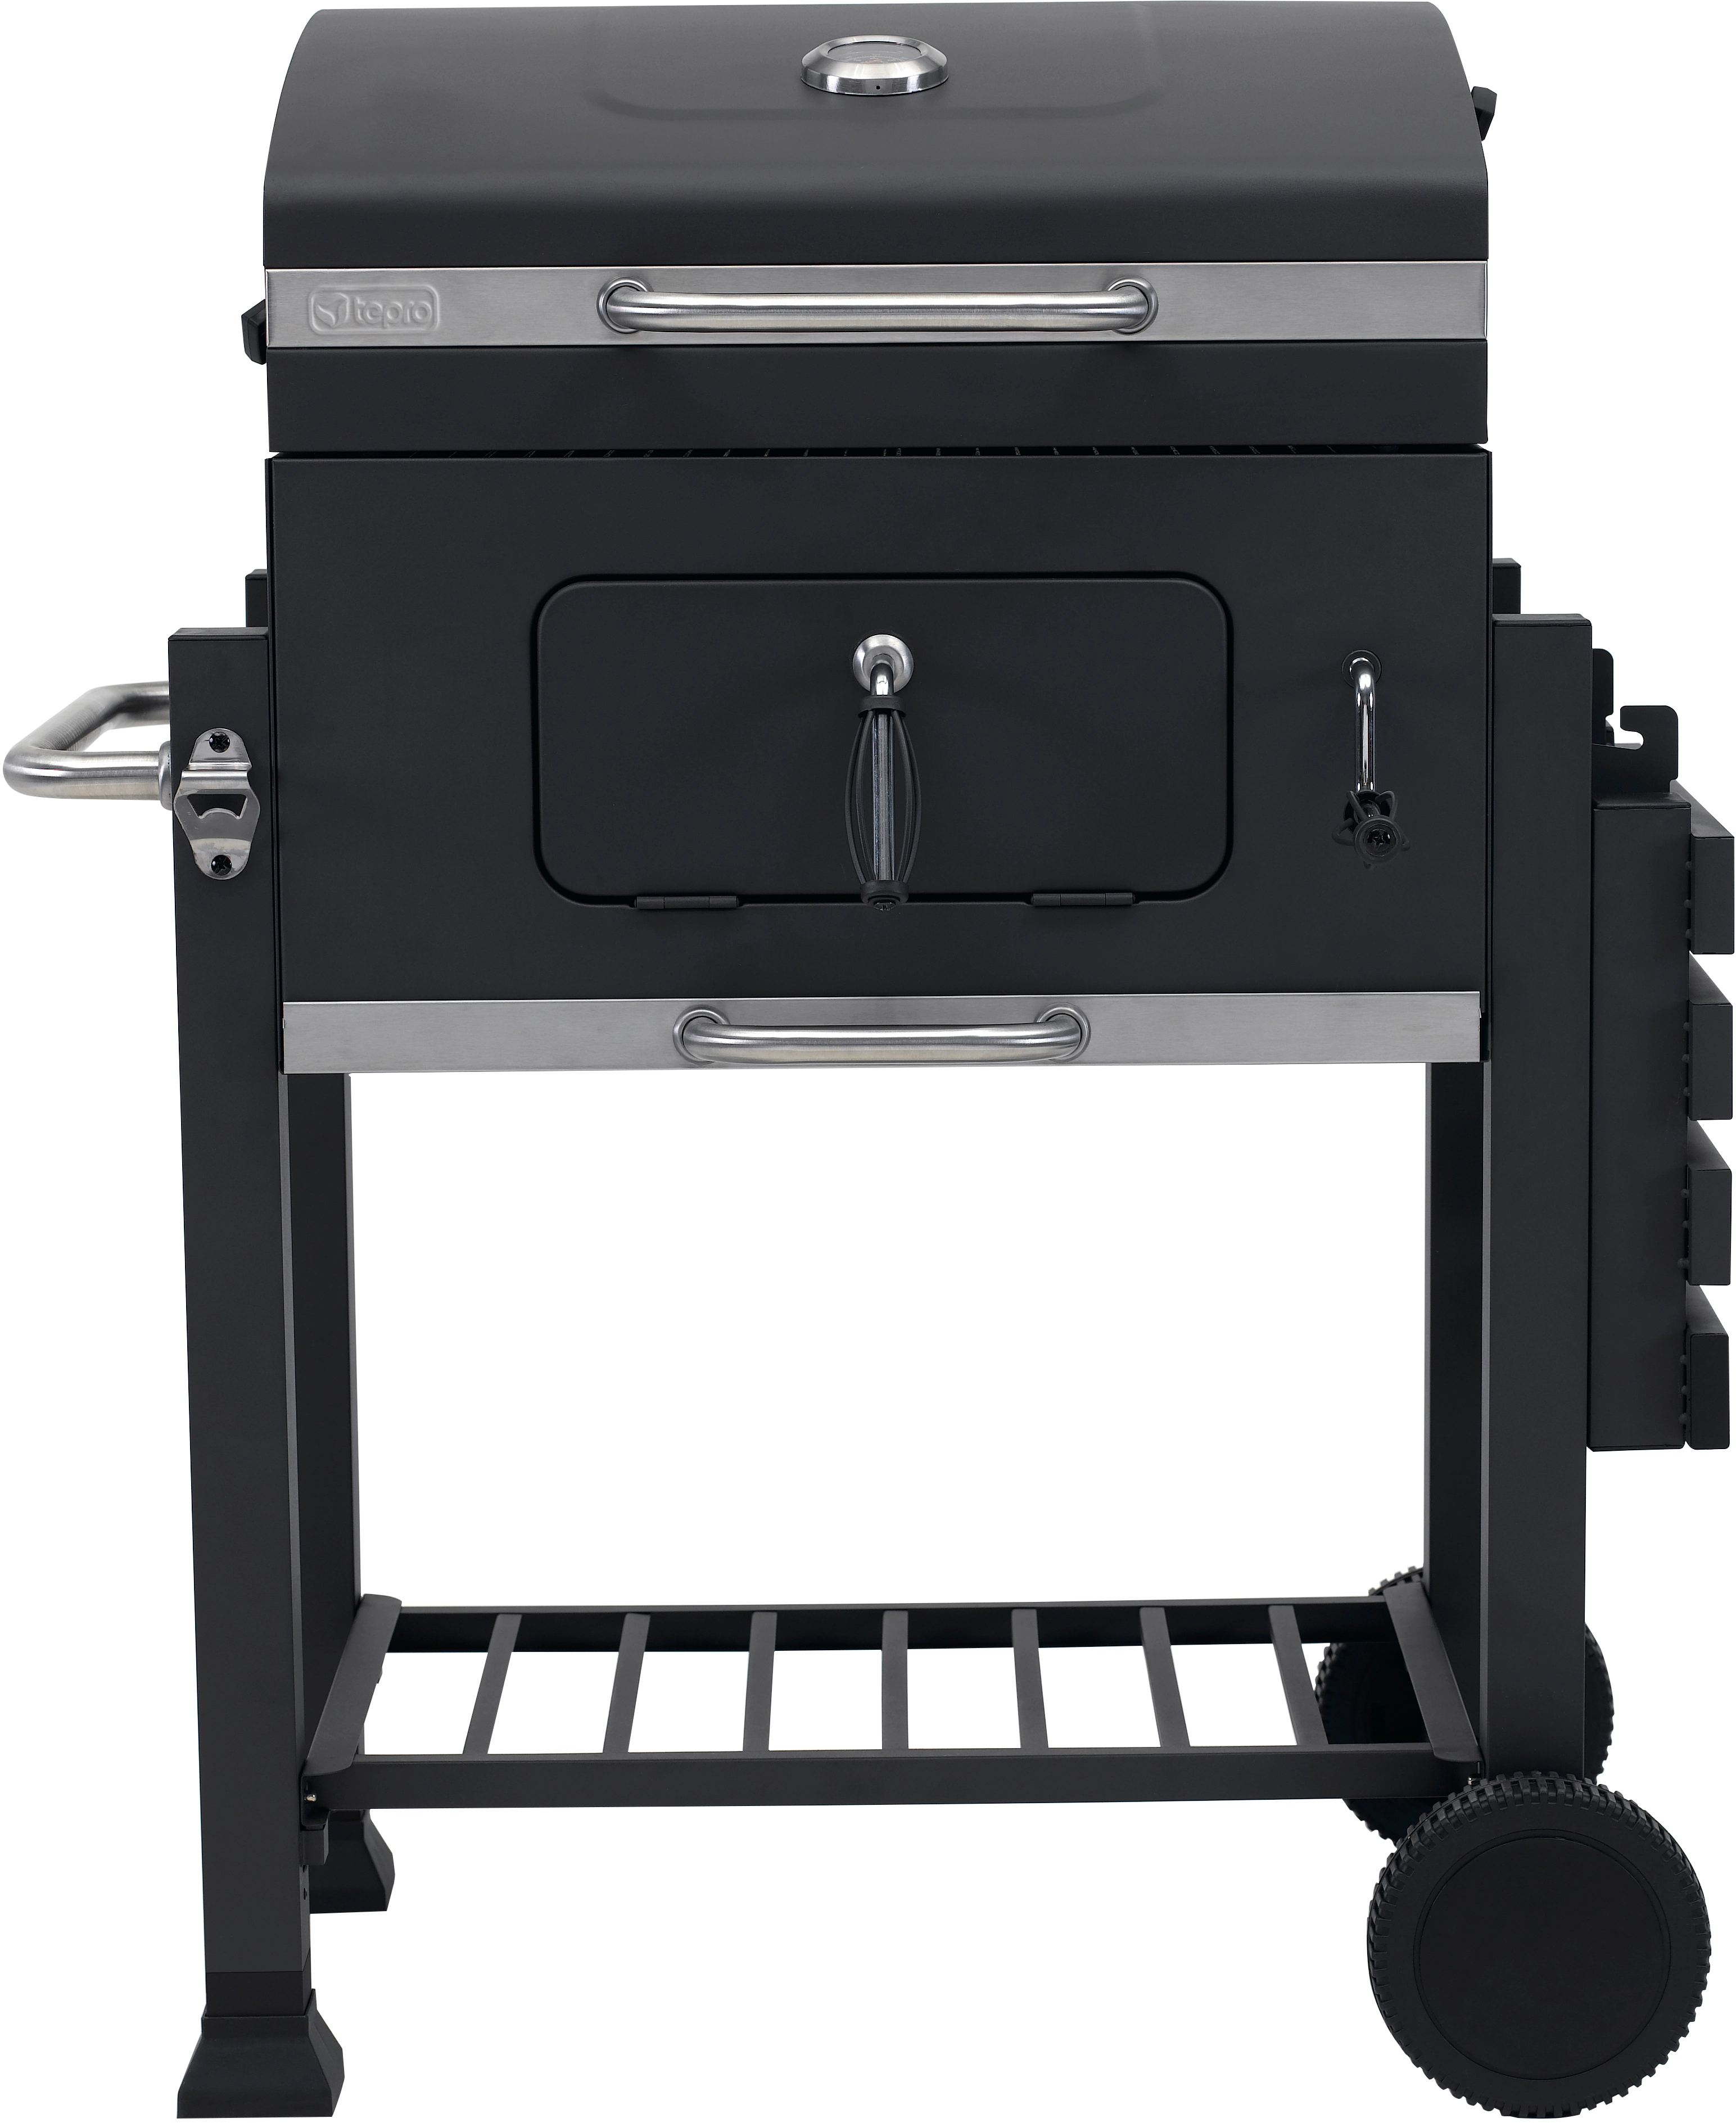 Tepro Holzkohle-Grillwagen Toronto Click mit höhenverstellbarer Kohlewanne  kaufen bei OBI